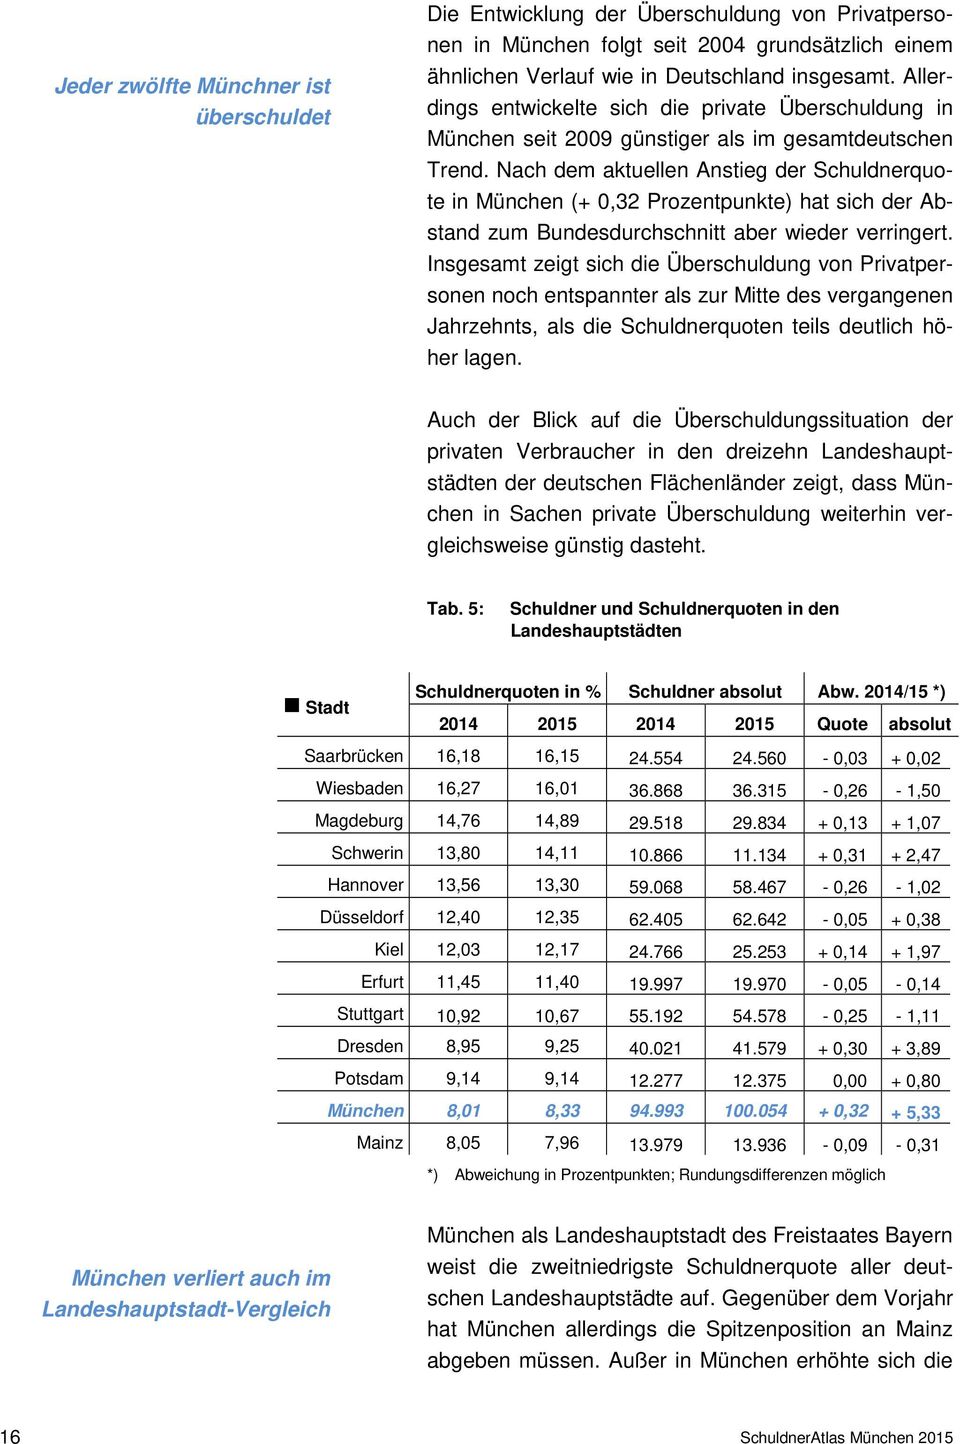 Nach dem aktuellen Anstieg der Schuldnerquote in München (+ 0,32 Prozentpunkte) hat sich der Abstand zum Bundesdurchschnitt aber wieder verringert.